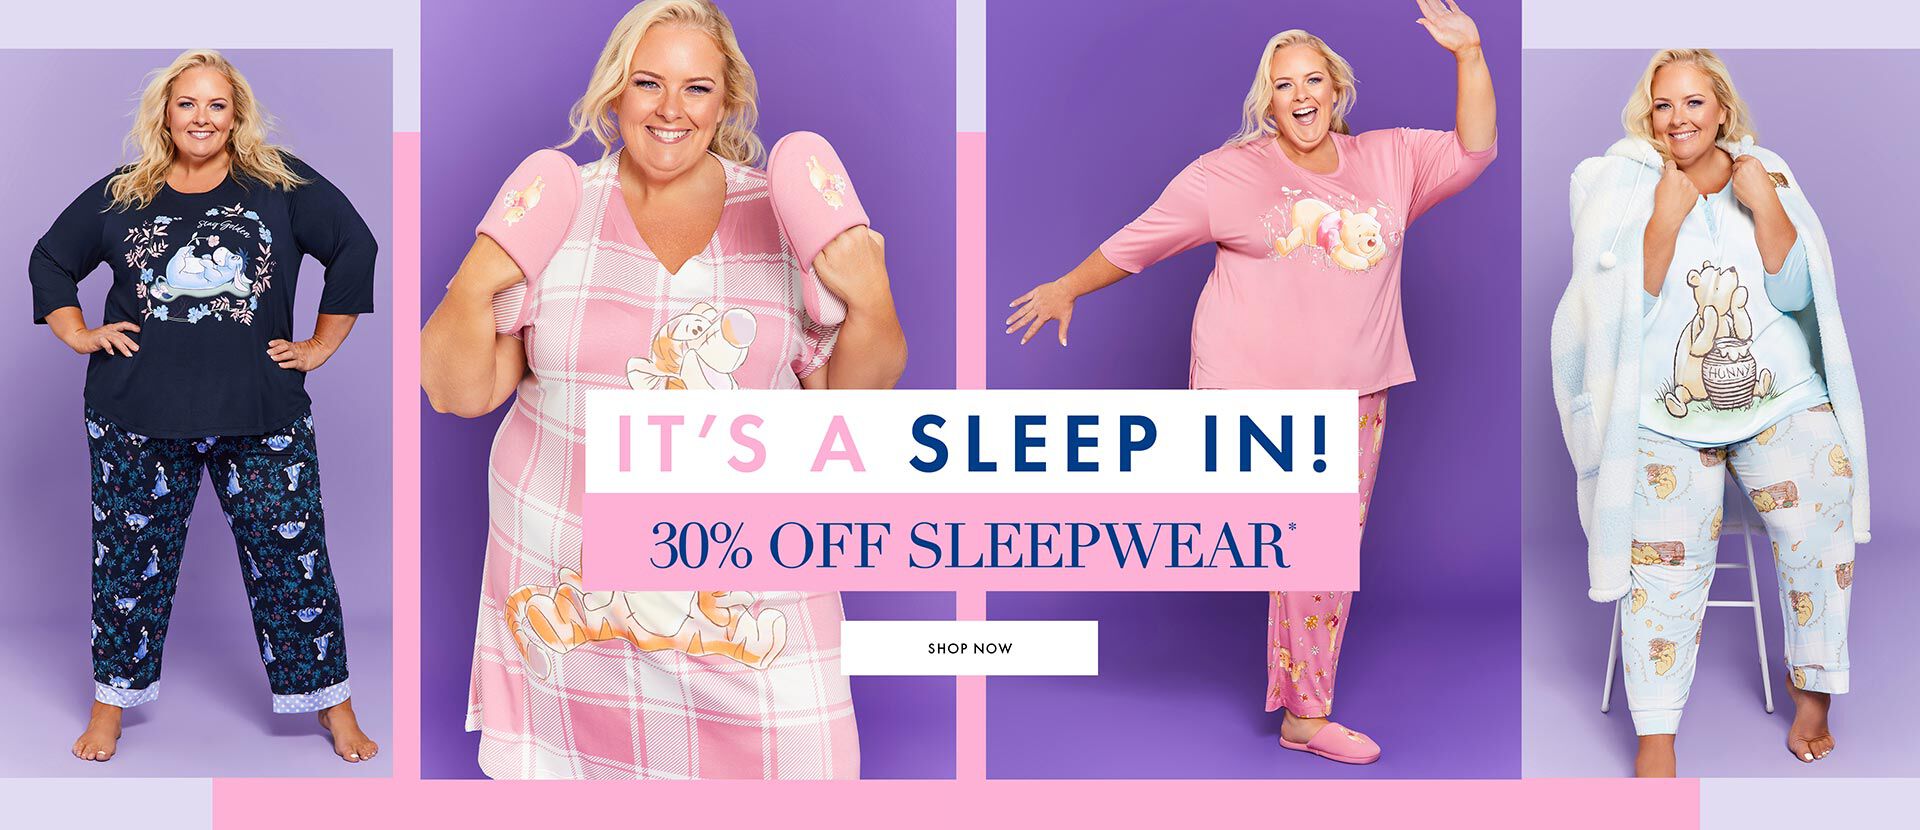 30% off Sleepwear*